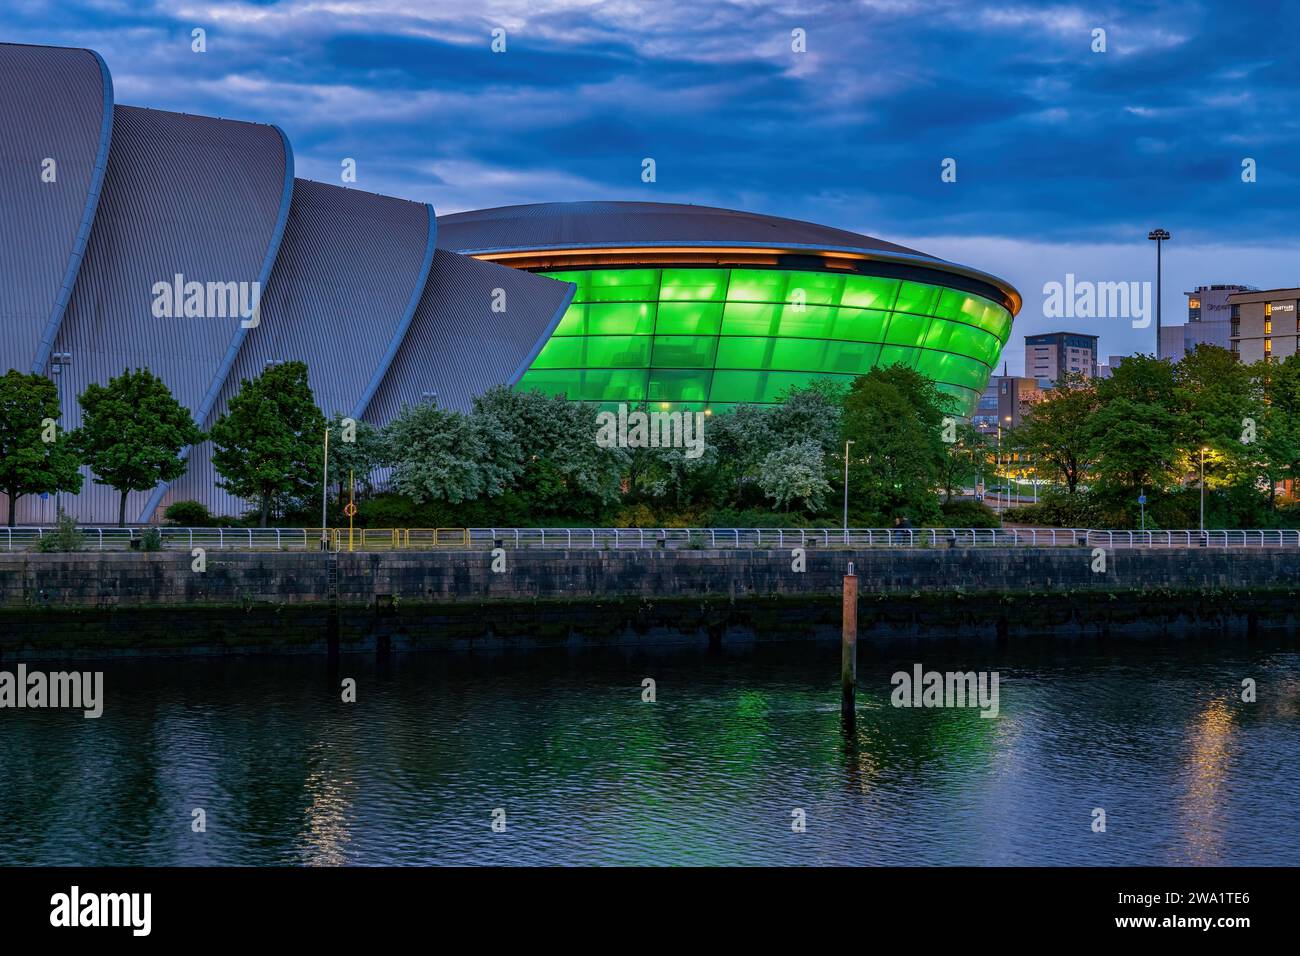 L'auditorium SEC Armadillo e l'arena coperta OVO Hydro al tramonto all'interno dello Scottish Event Campus nella città di Glasgow, Scozia, Regno Unito. Foto Stock